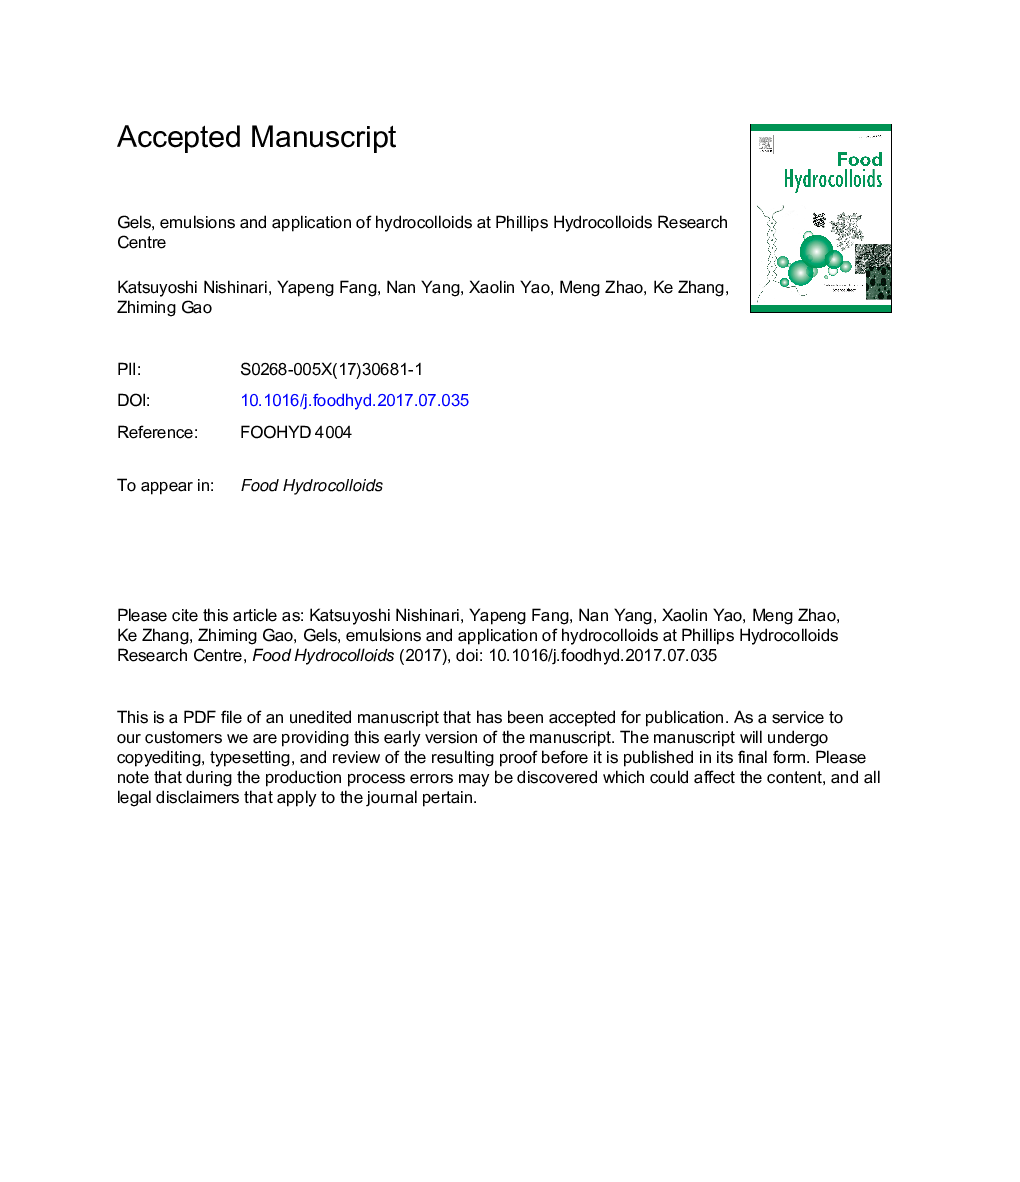 ژل، امولسیون و کاربرد هیدروکلوئید در مرکز تحقیقات هیدروکلوئید فیلیپس 